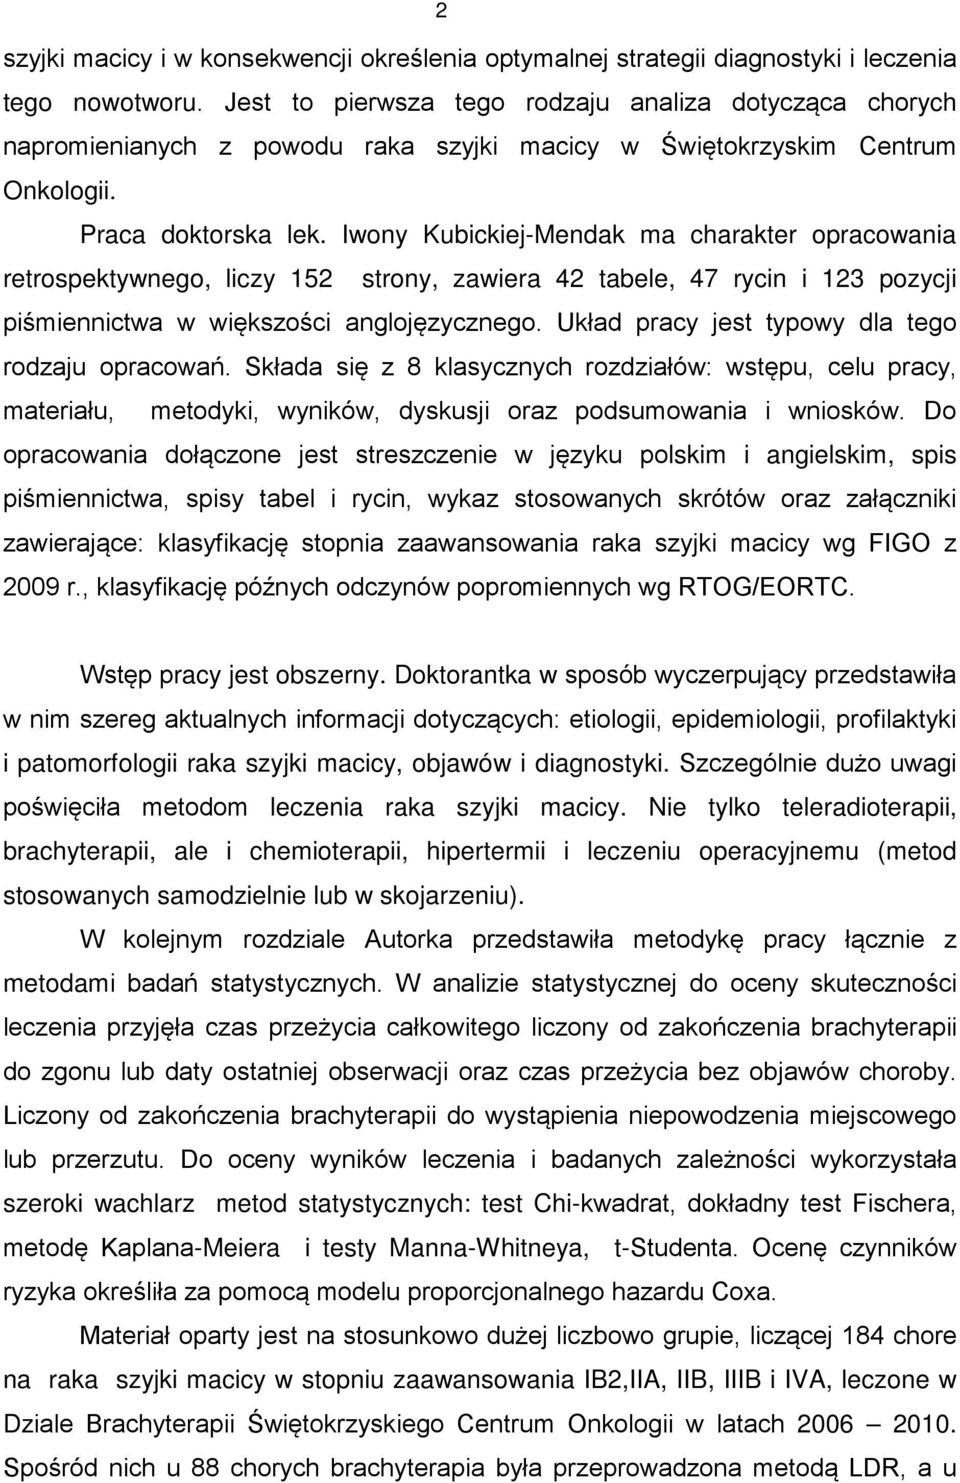 Iwony Kubickiej-Mendak ma charakter opracowania retrospektywnego, liczy 152 strony, zawiera 42 tabele, 47 rycin i 123 pozycji piśmiennictwa w większości anglojęzycznego.